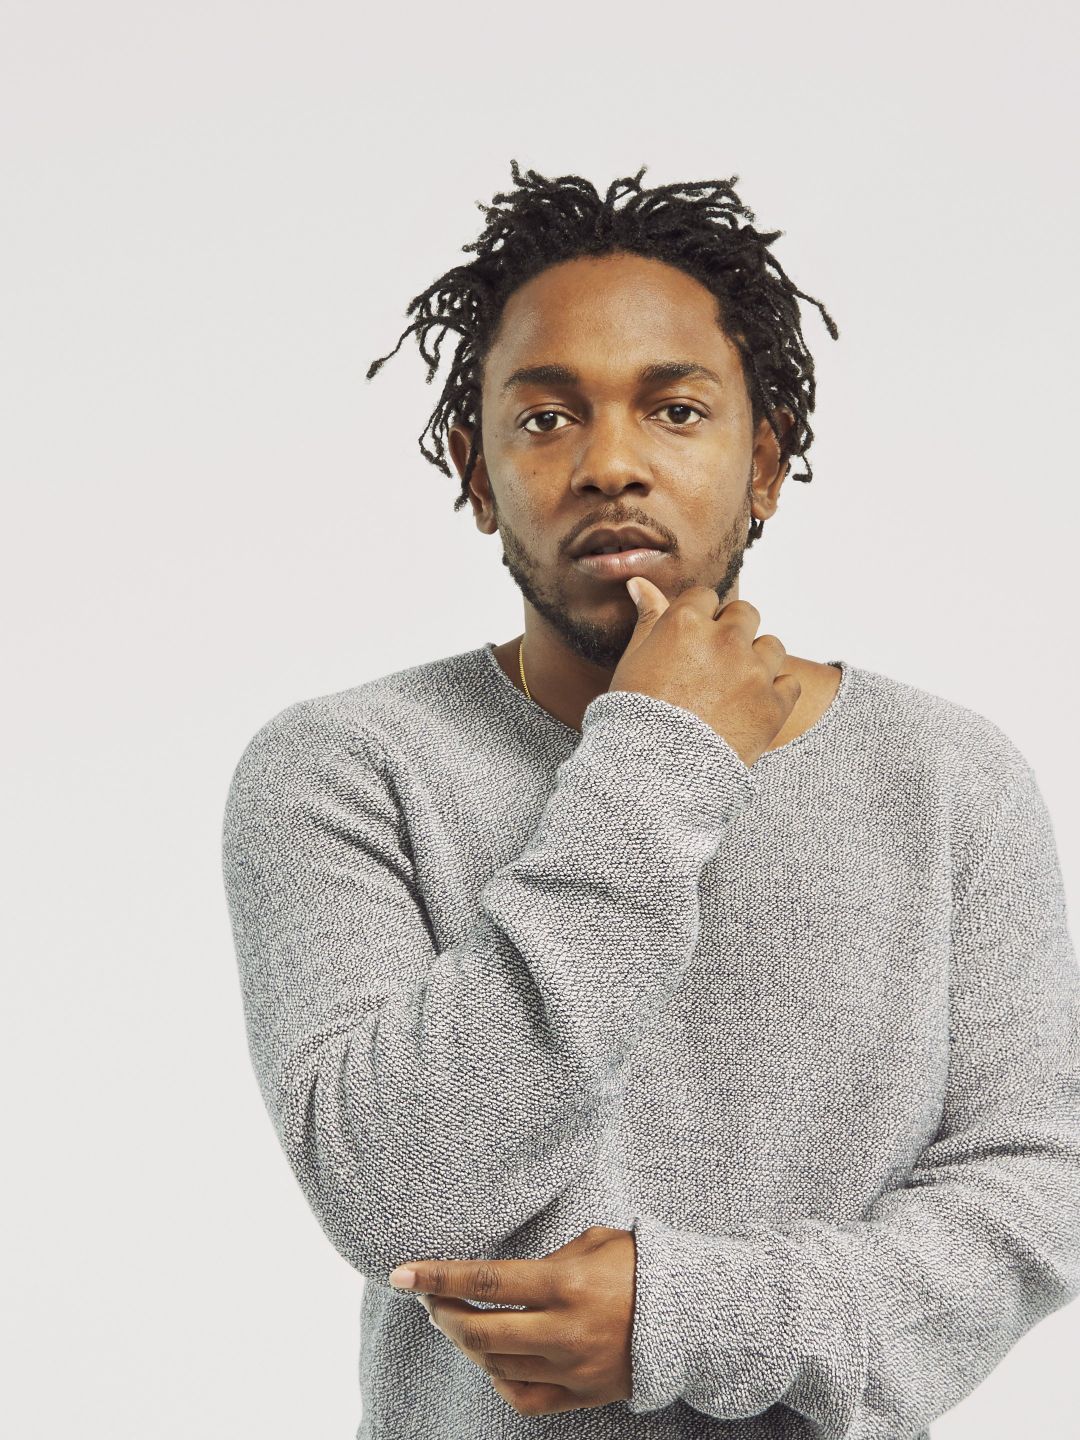 Kendrick Lamar in his teens